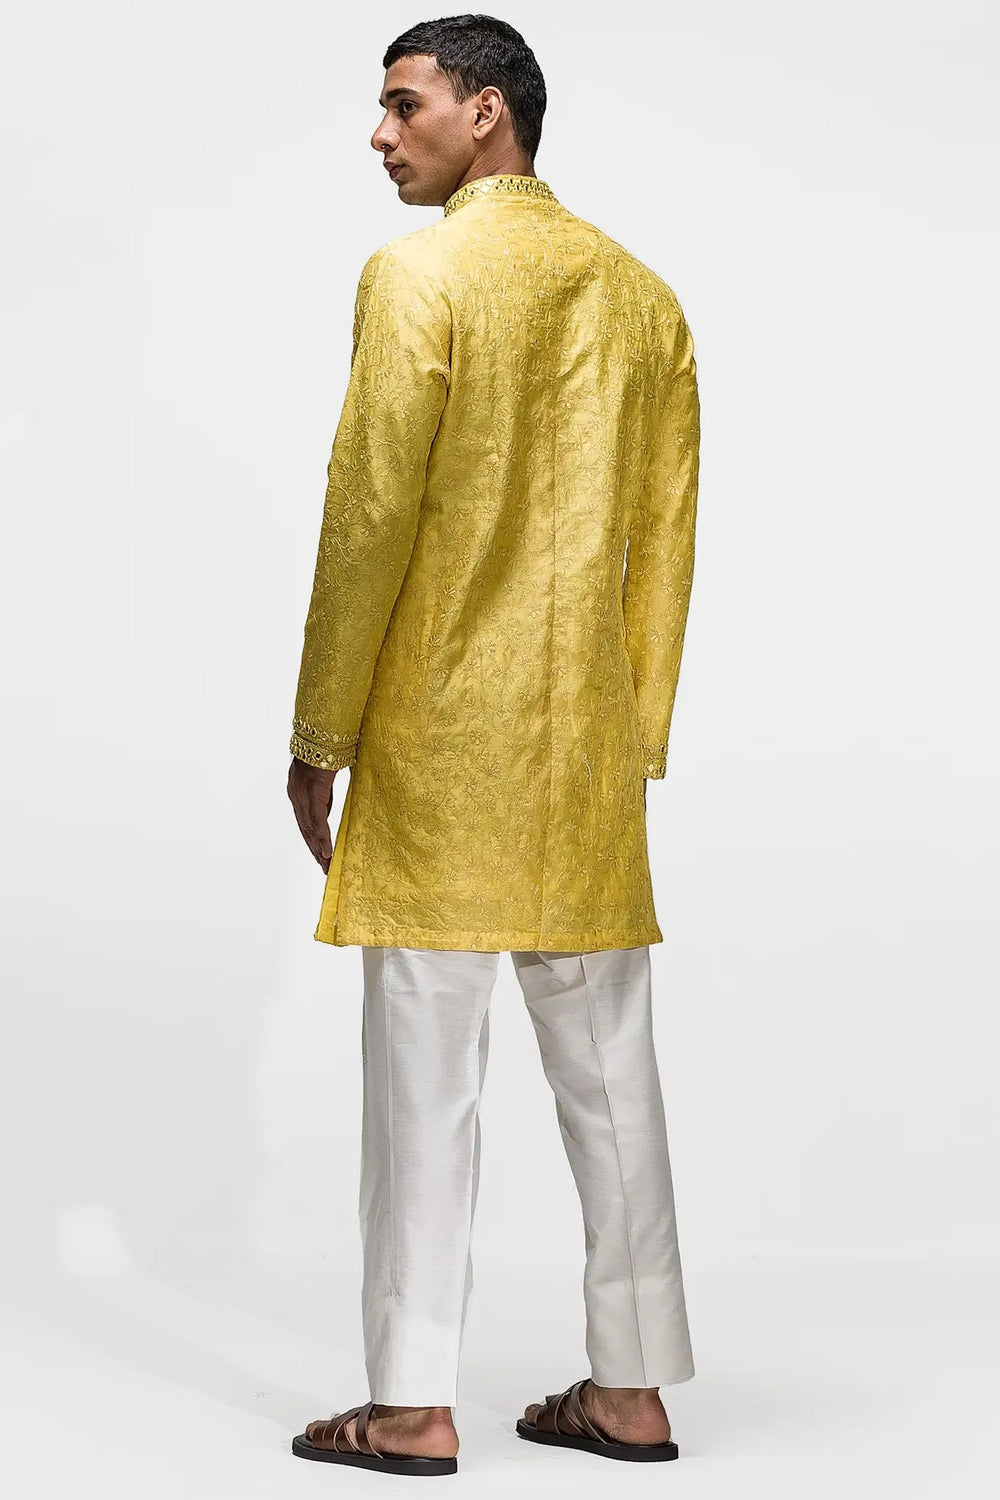 Yellow Resham Mirror Work Kurta - Asuka Couture